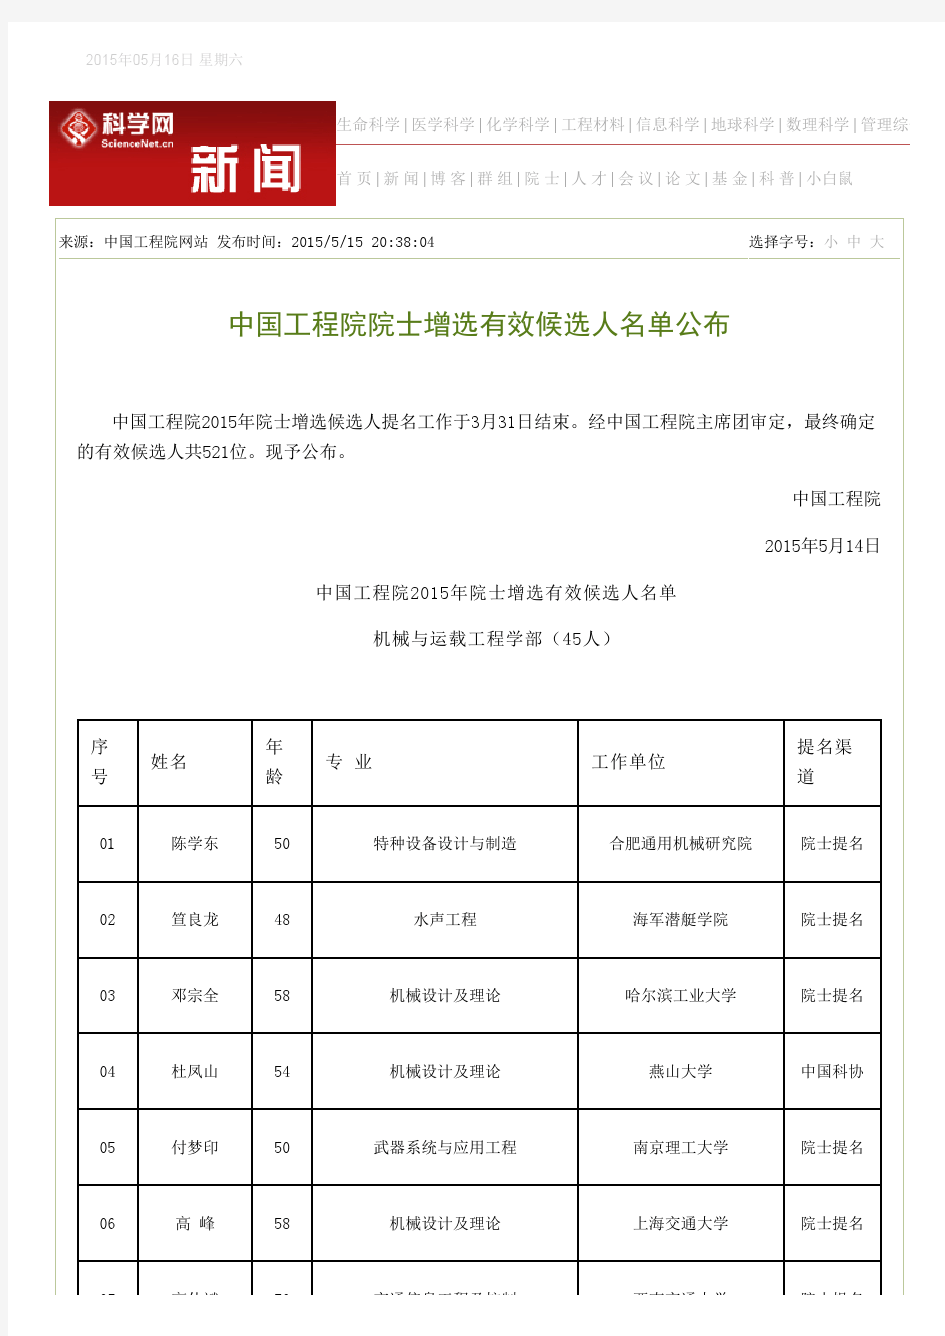 中国工程院院士增选有效候选人名单